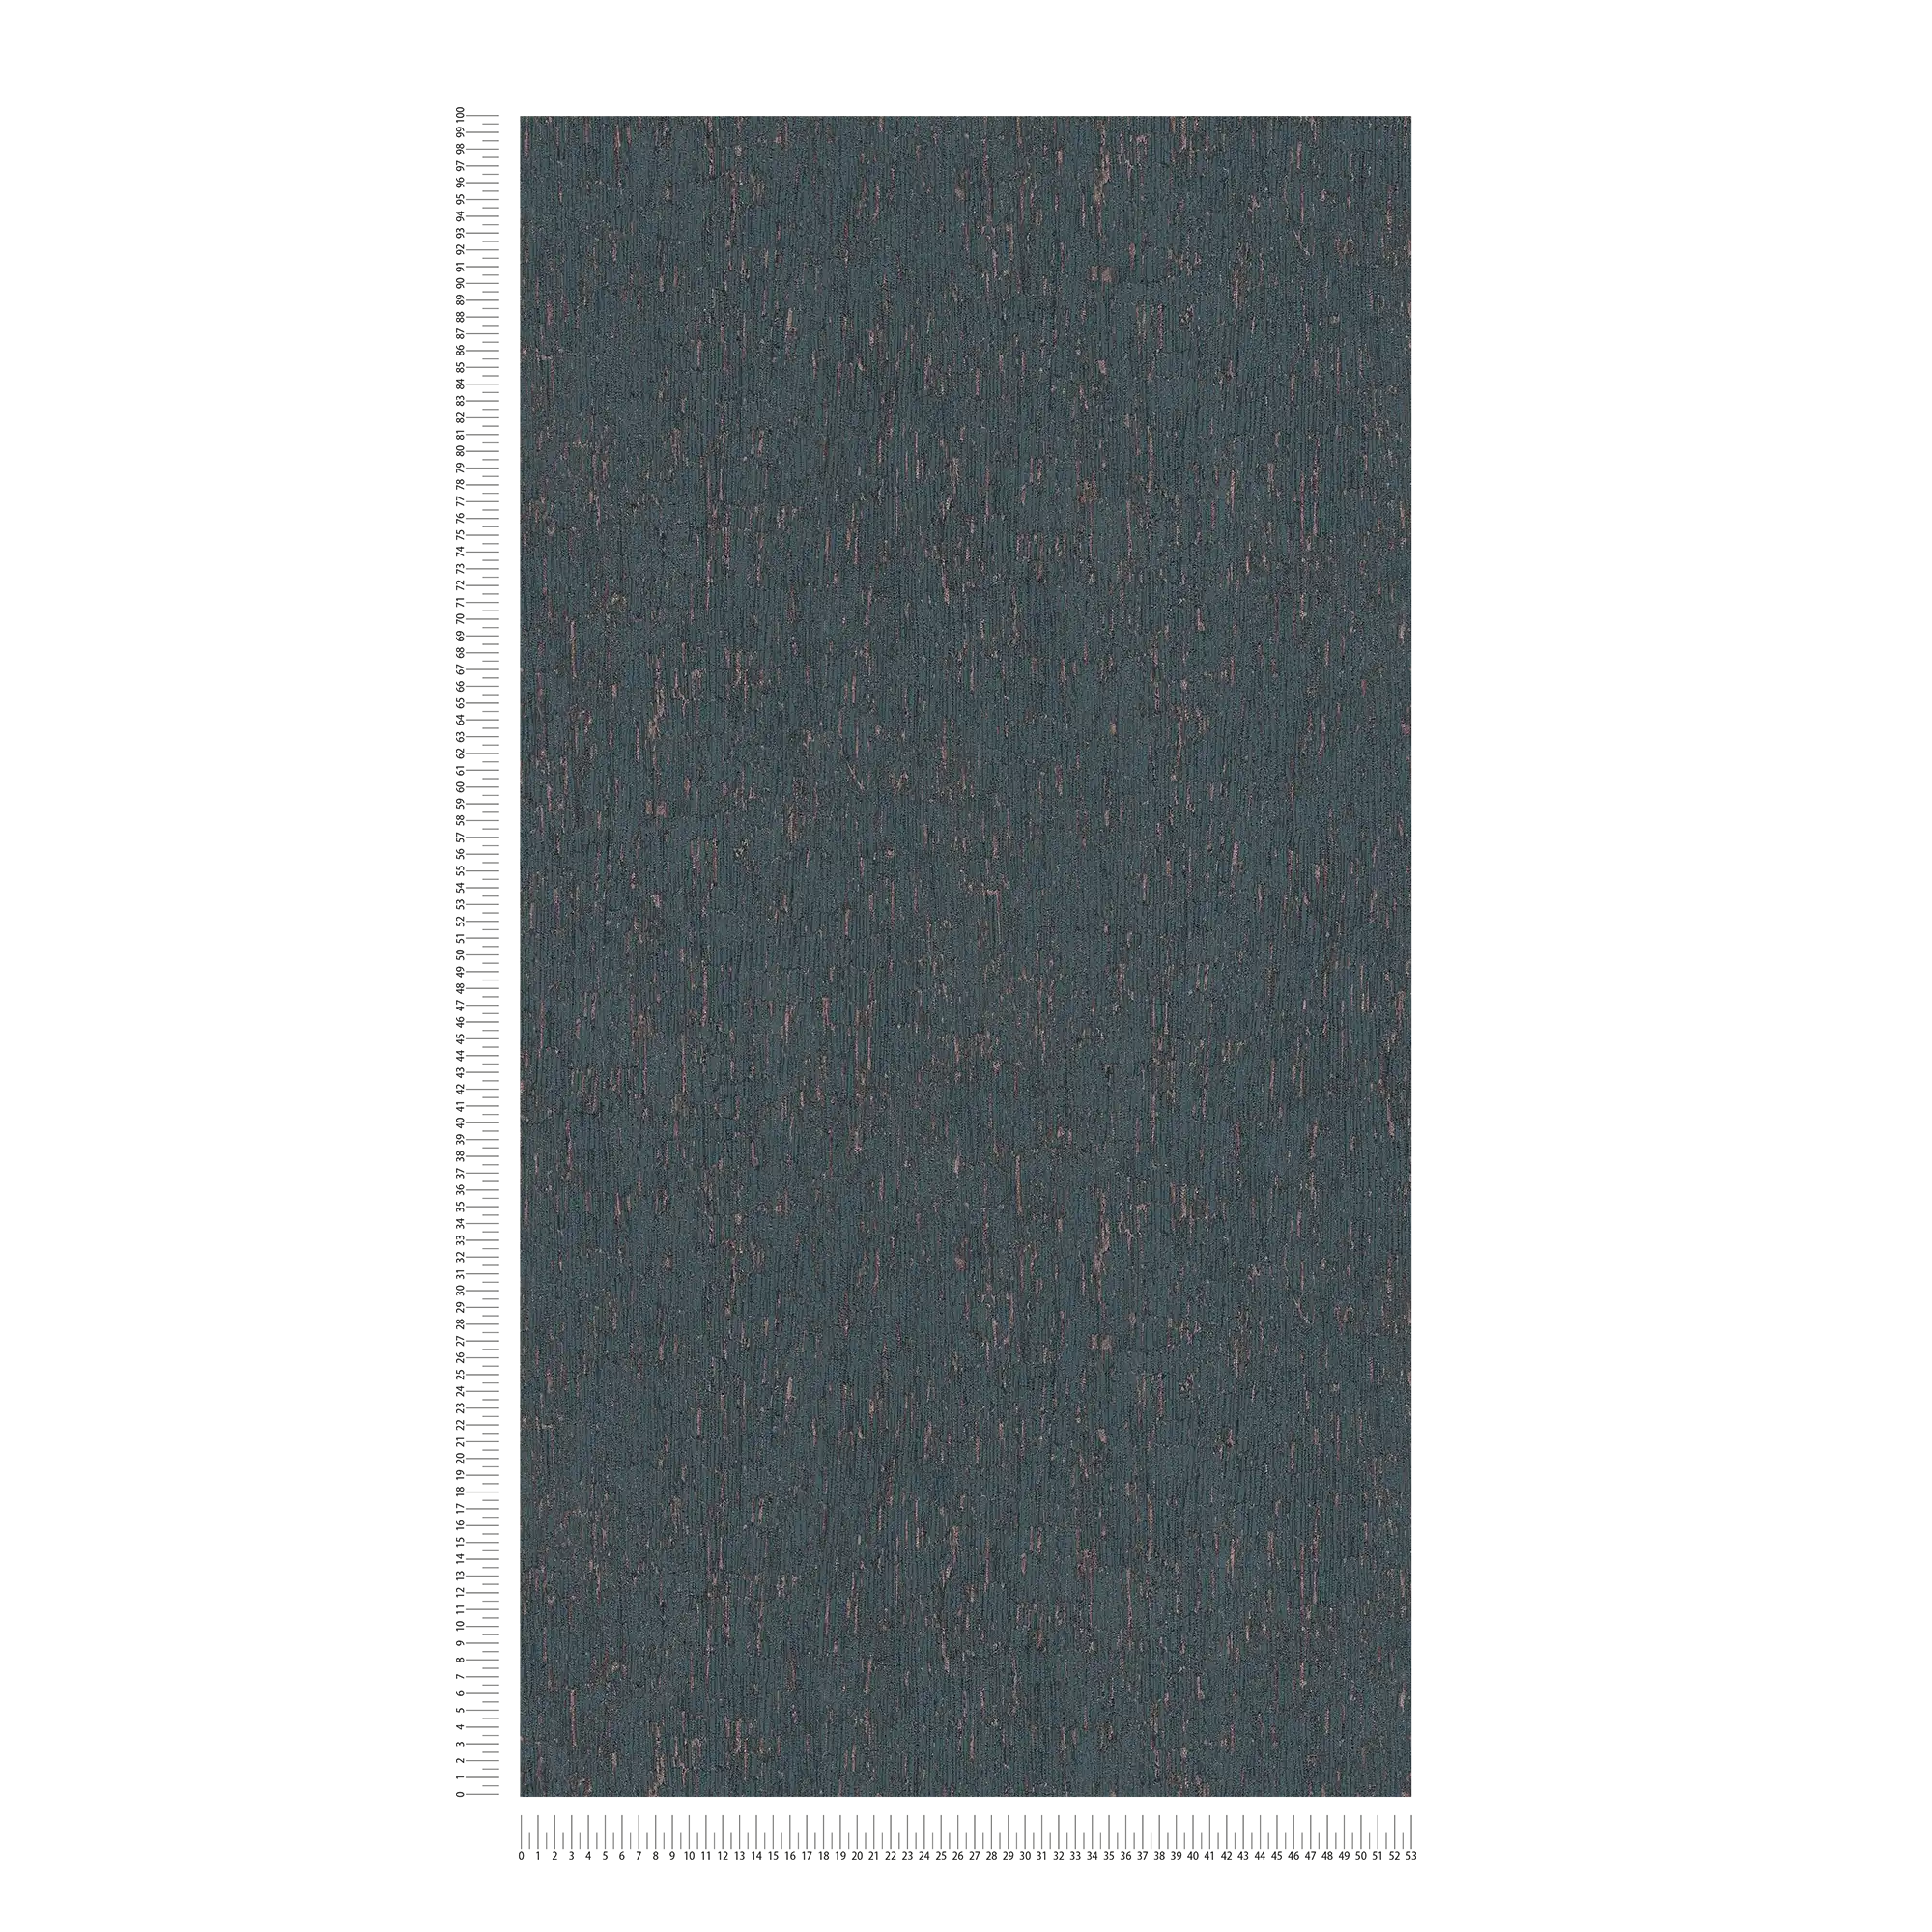             Papel pintado no tejido con aspecto de escayola y acentos azules, bronce y metálicos.
        